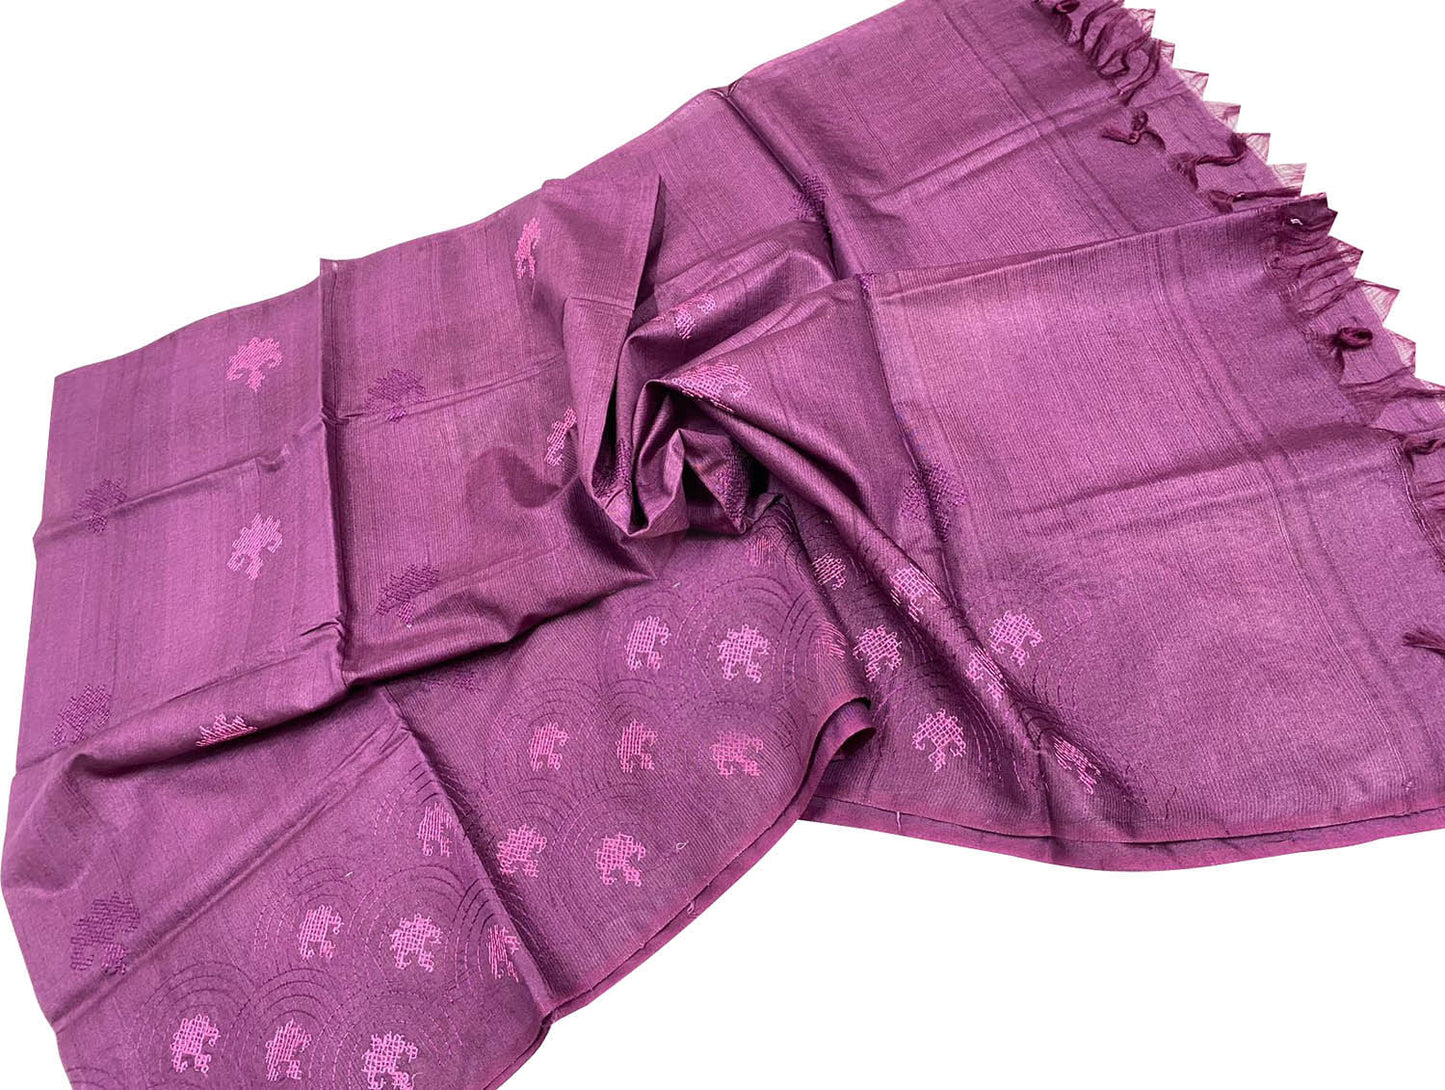 Shop Pink Bhagalpur Tussar Silk Dupatta - Elegant & Luxurious - Luxurion World